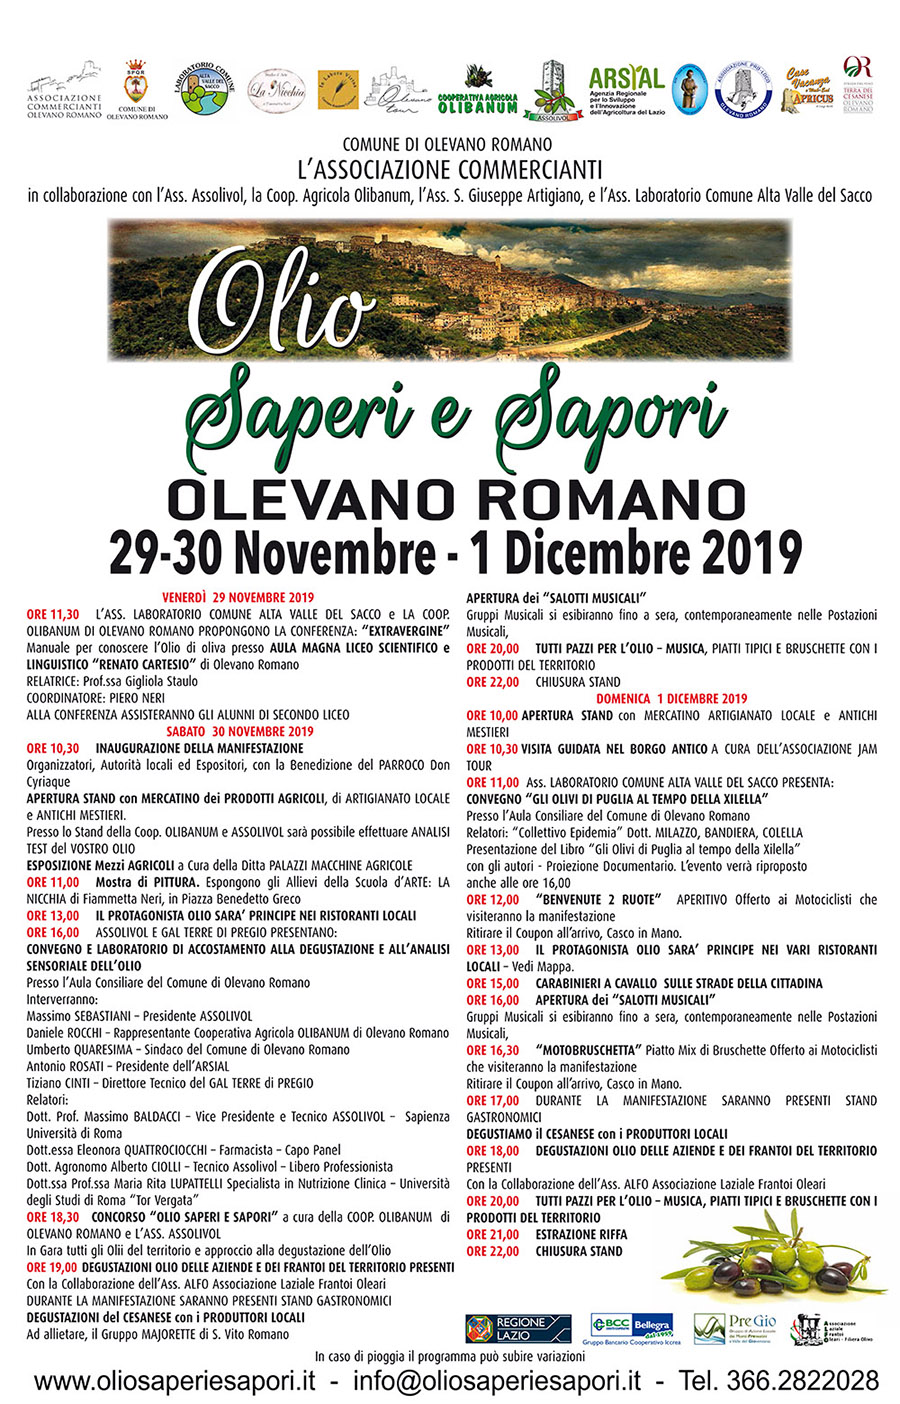 Olevano Romano, 1 dicembre 2019